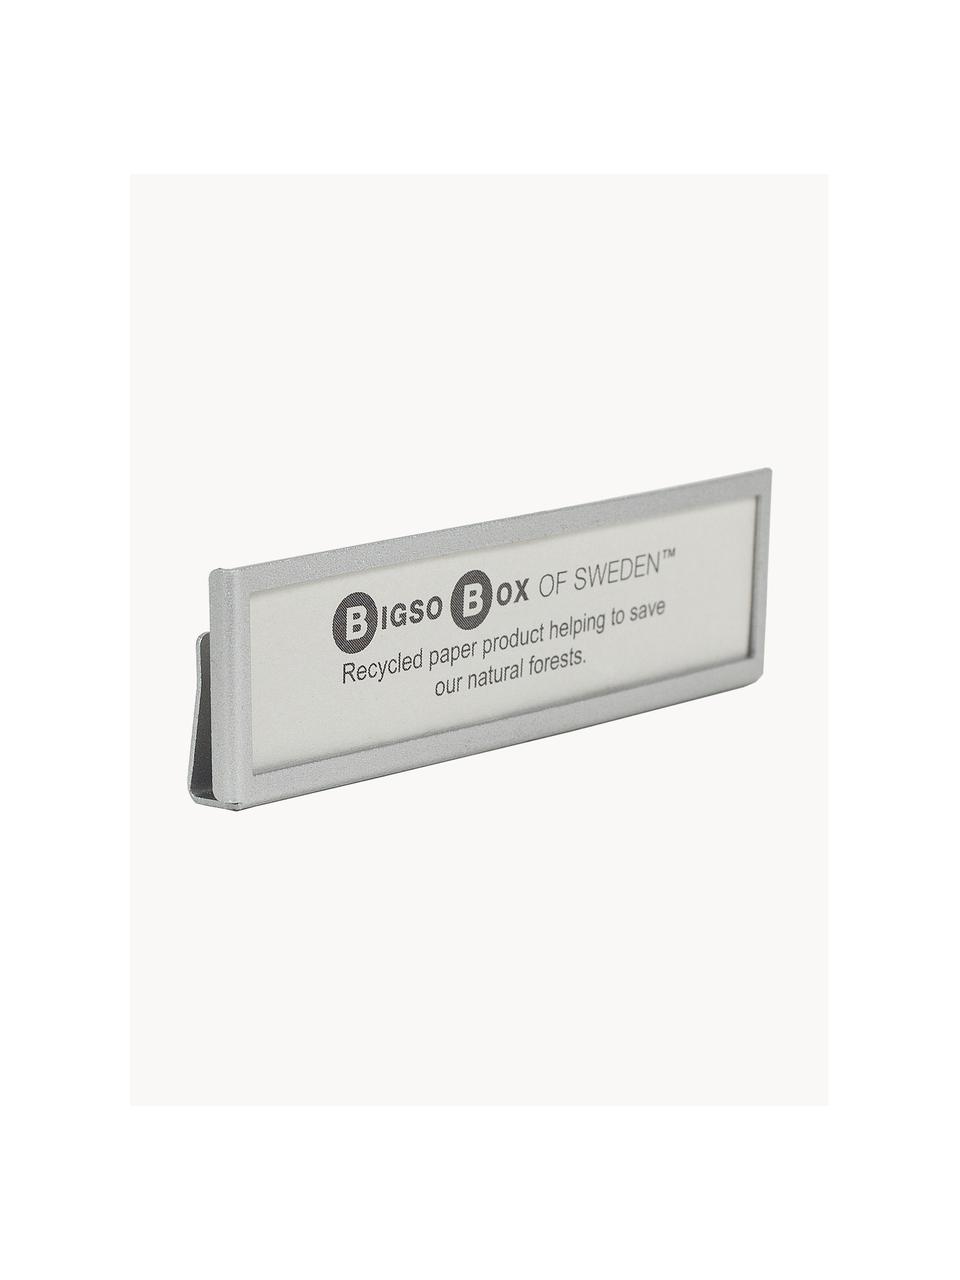 Etikethouder Clips Label, 4 stuks, Gecoat metaal, Zilverkleurig, B 7 x H 2 cm